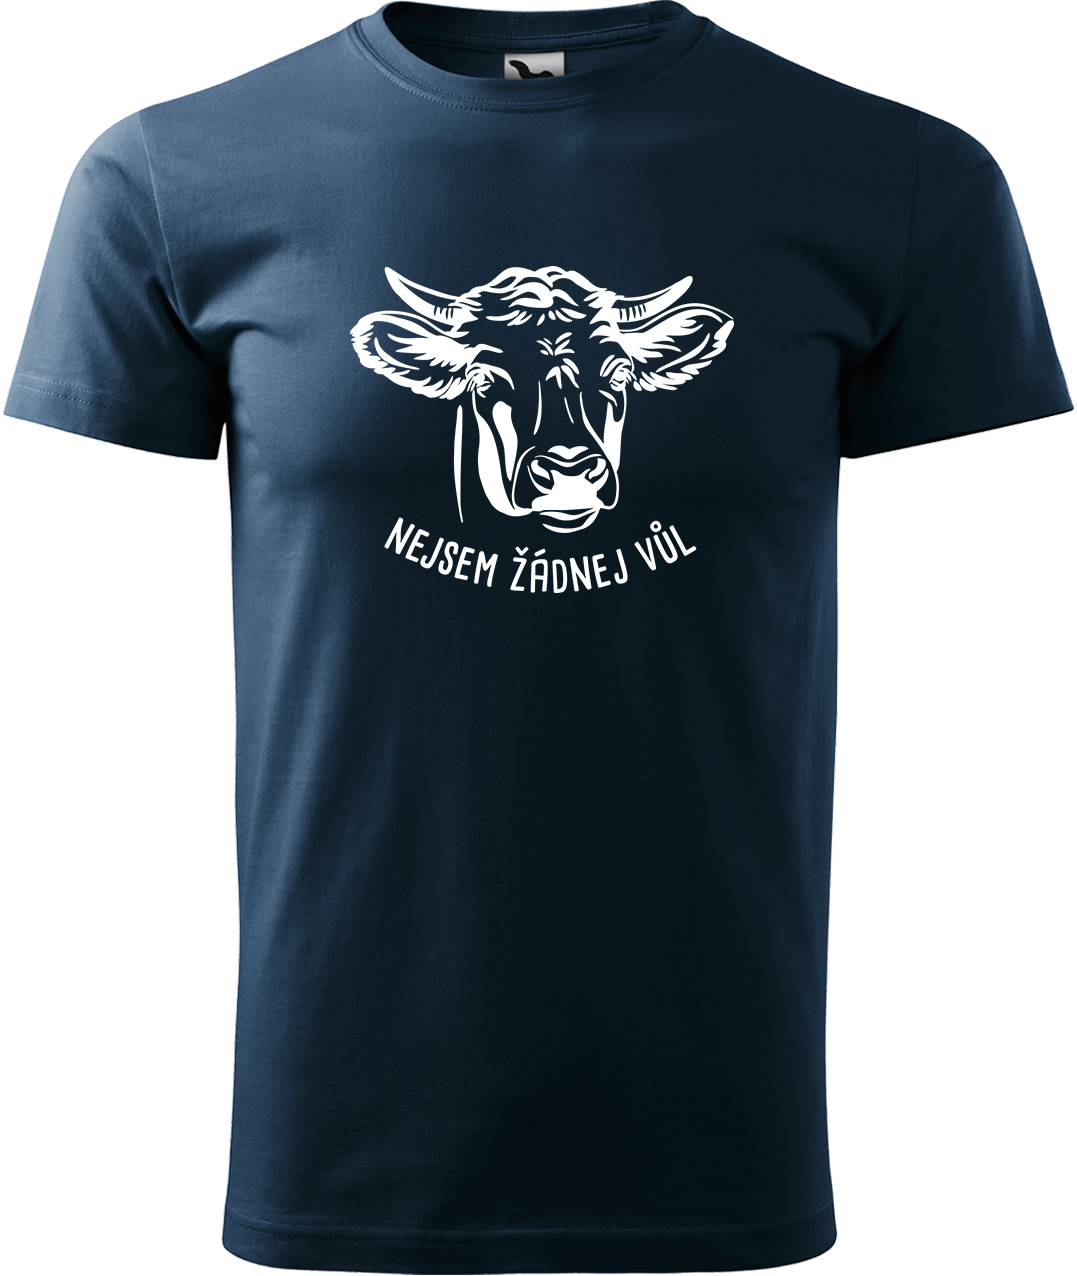 Pánské tričko s krávou - Nejsem žádnej vůl Velikost: 4XL, Barva: Námořní modrá (02), Střih: pánský